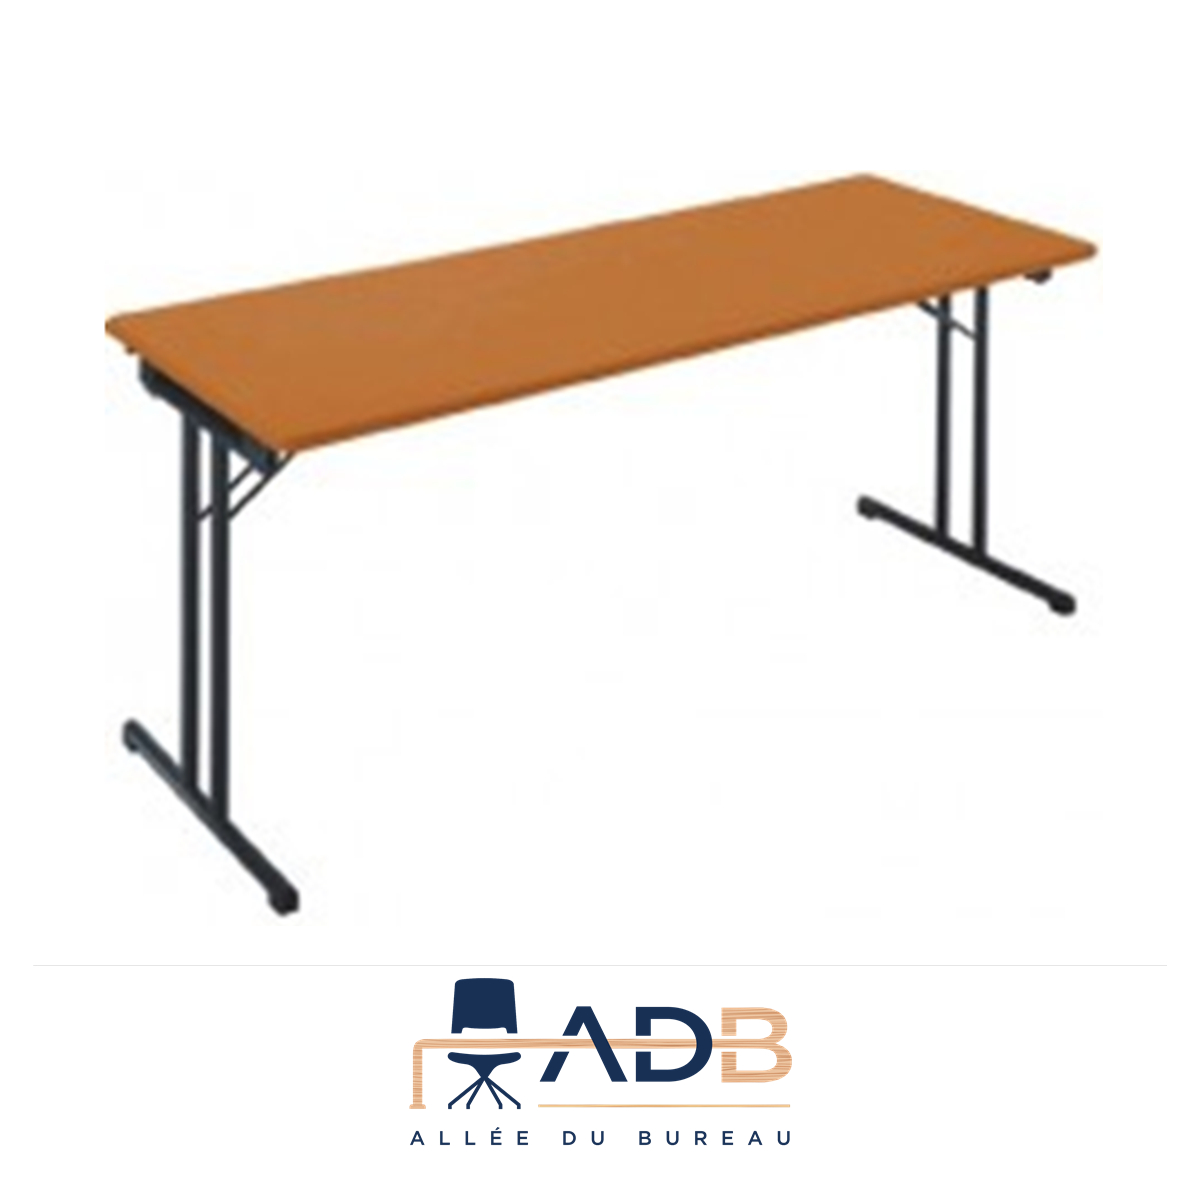 Bureaux, meubles et rangements, table de bureau pliante PLANA en aluminium  coloris gris tourterelle